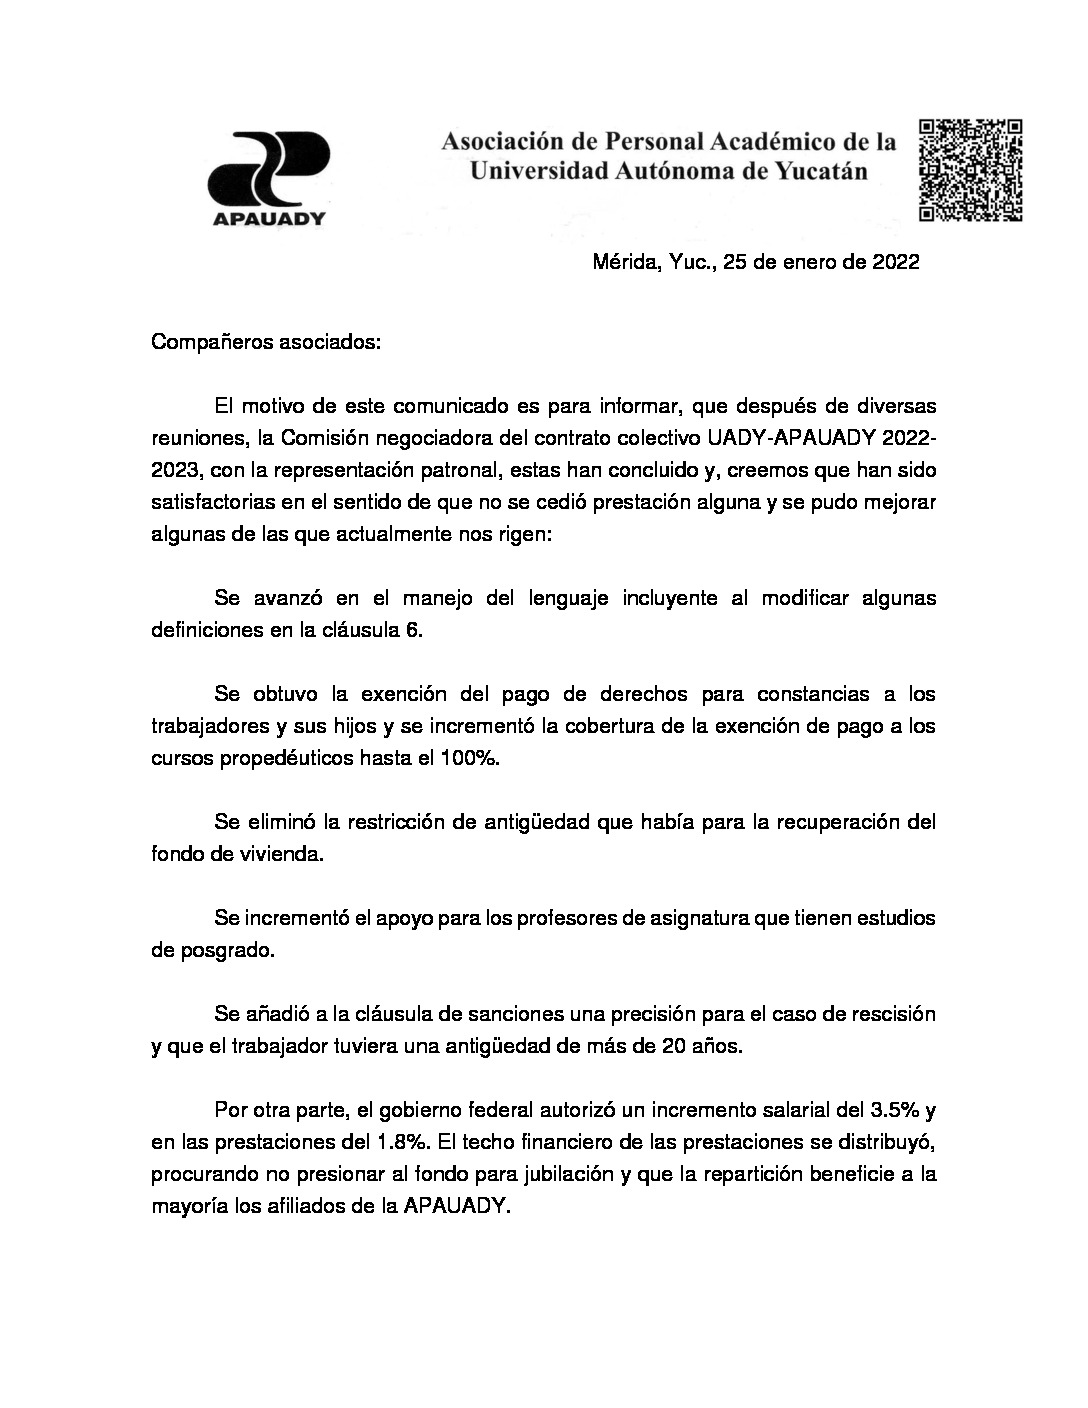 Featured image for “Comunicado | Comisión negociadora del contrato colectivo UADY-APAUADY 2022-2023”